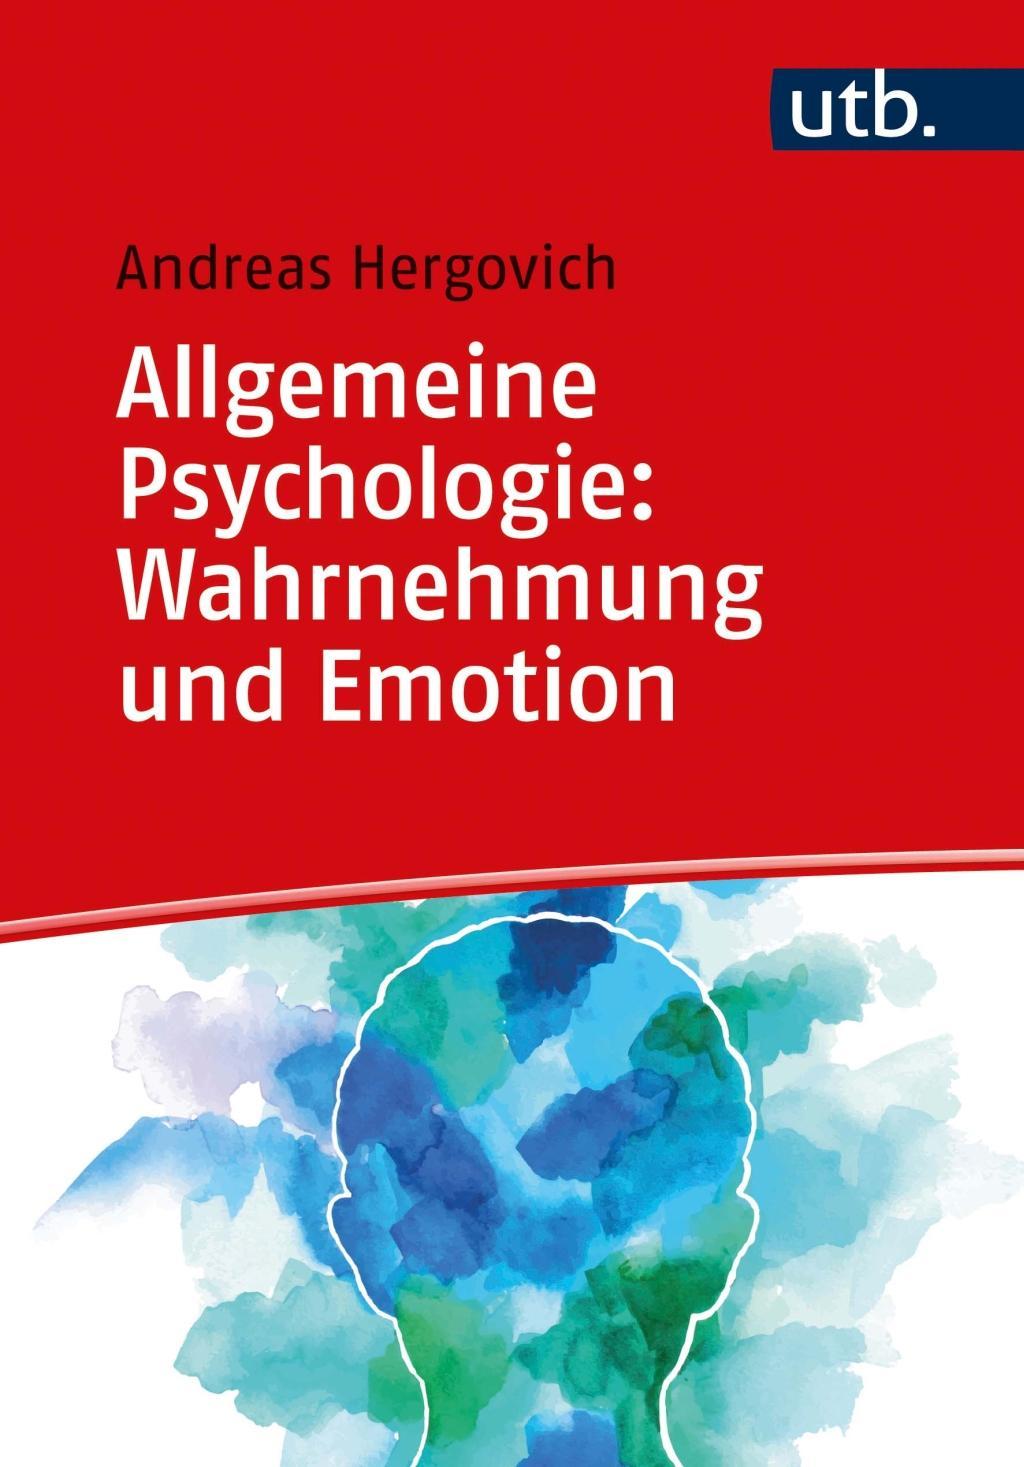 Kniha Allgemeine Psychologie: Wahrnehmung und Emotion Andreas Hergovich